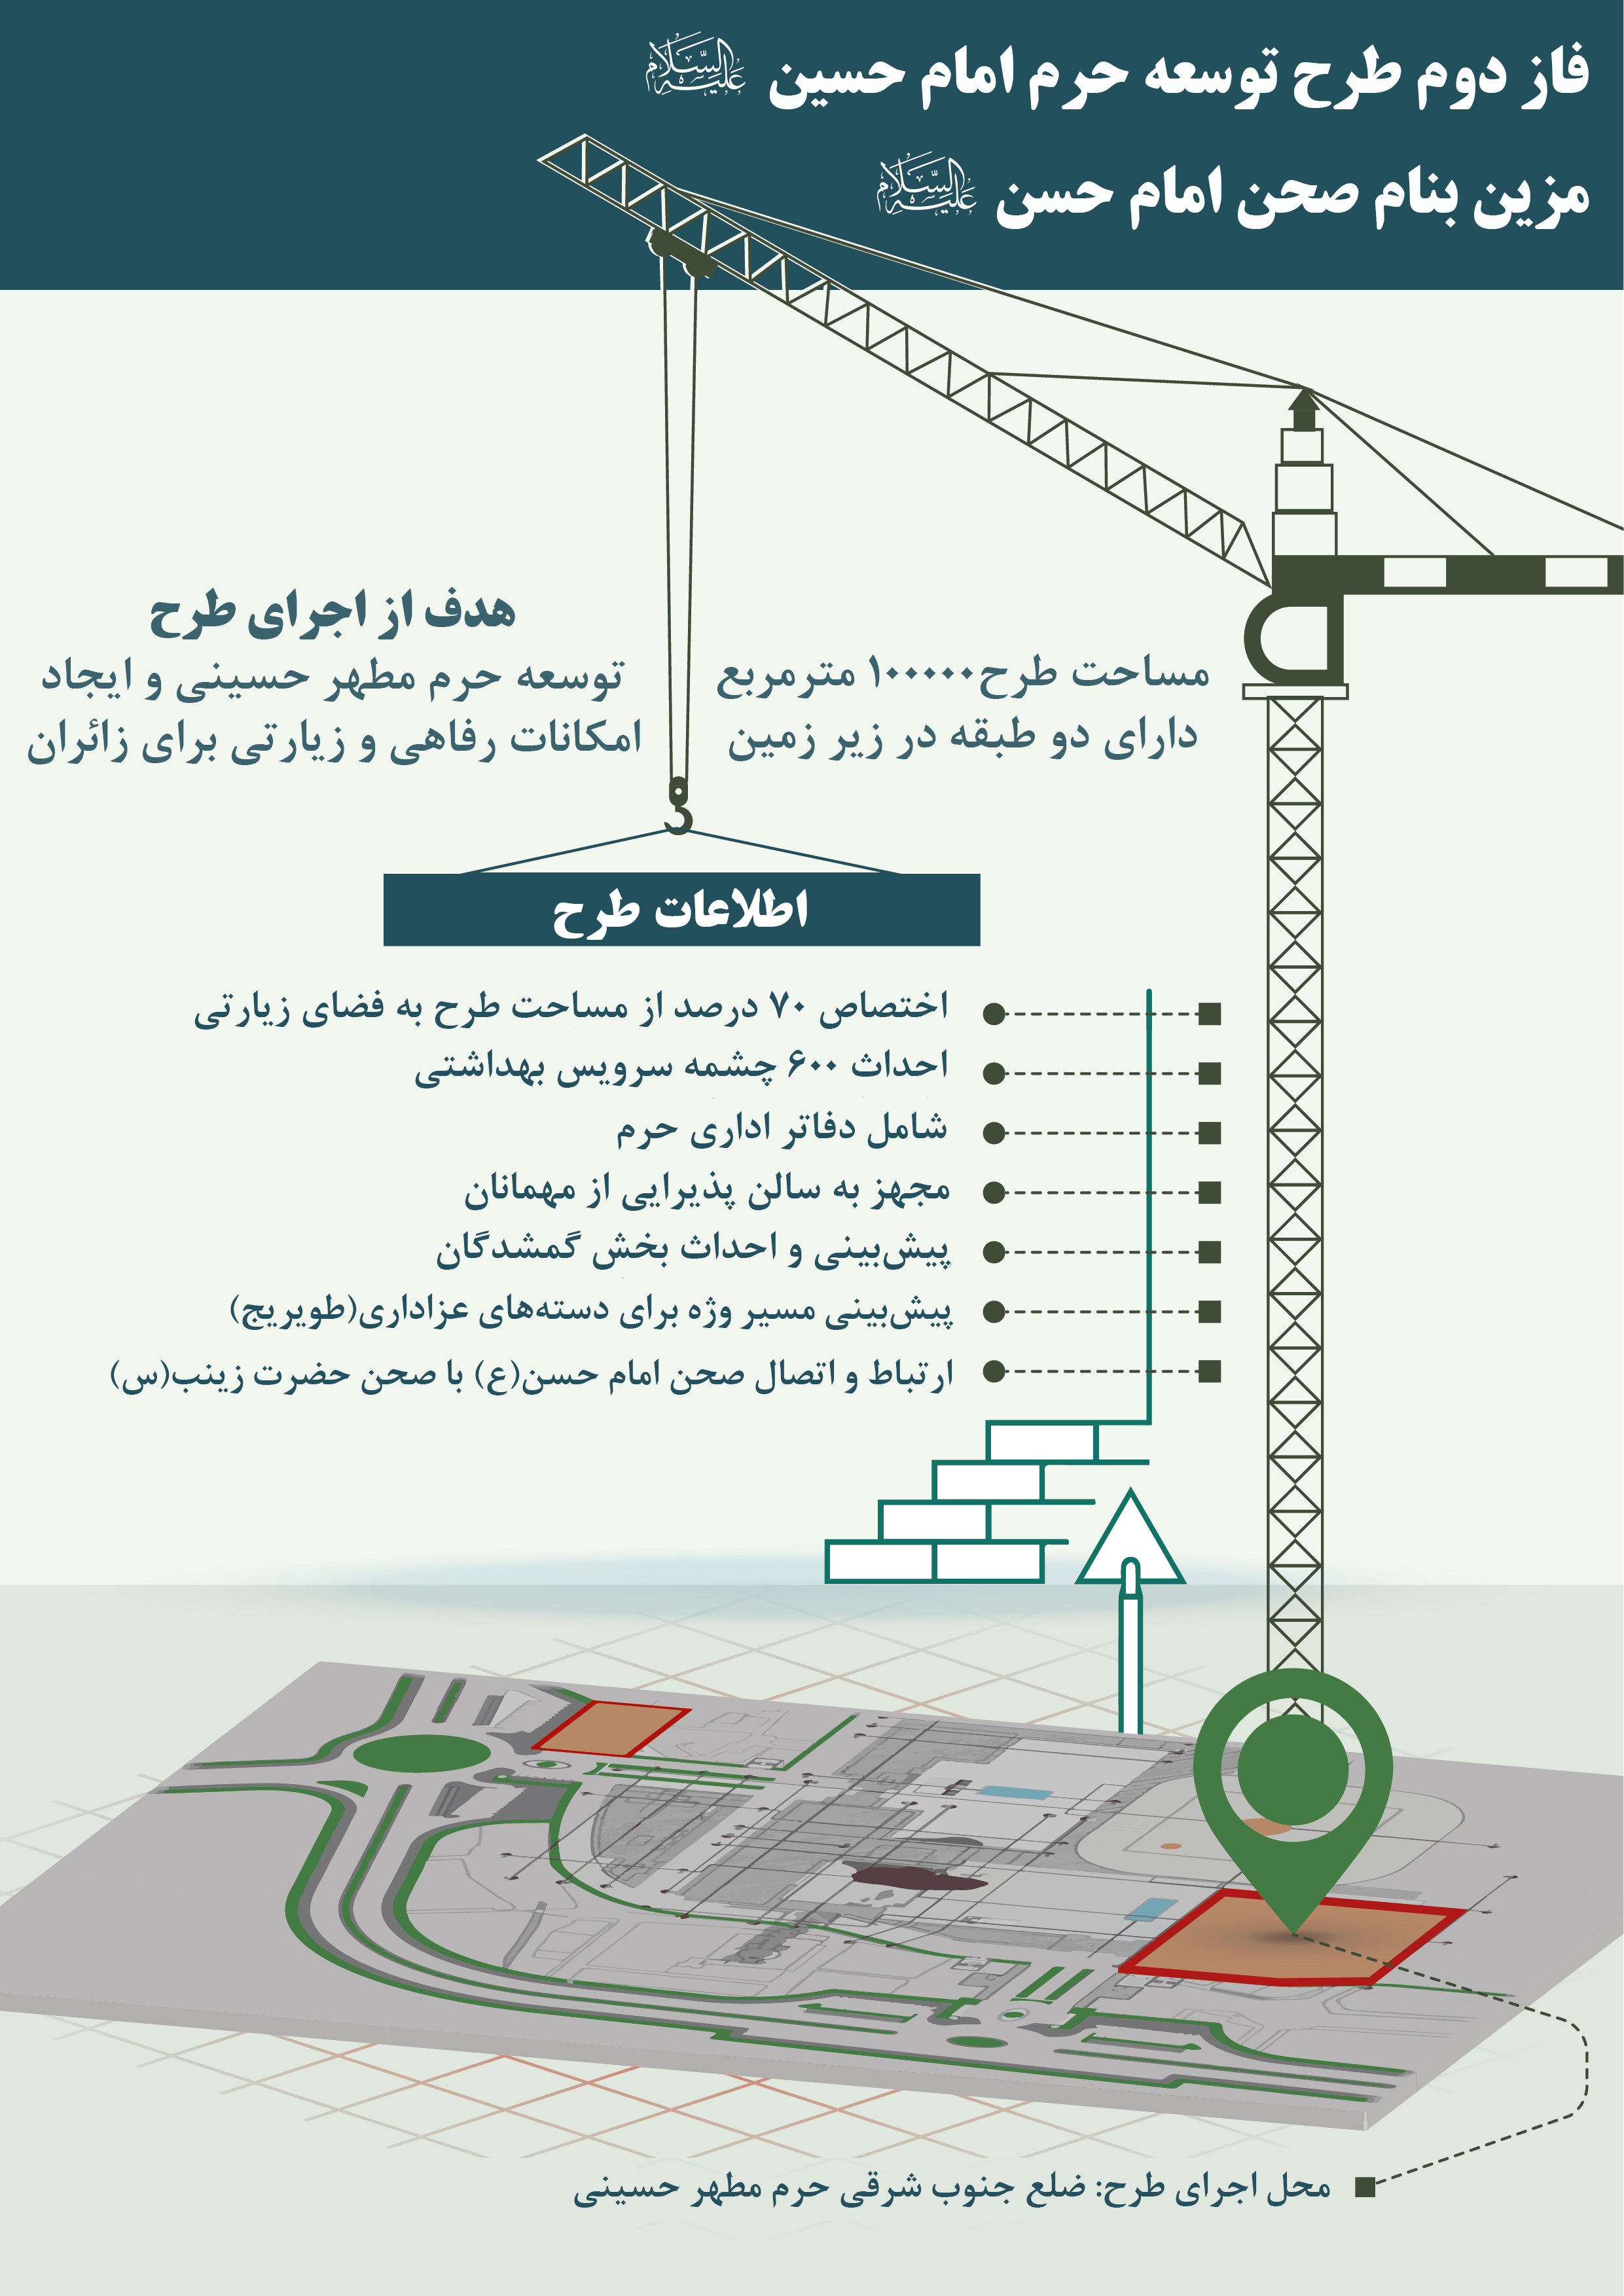 اجرای فاز دوم طرح توسعه حرم حسینی به ایران واگذار شد+اینفوگراف